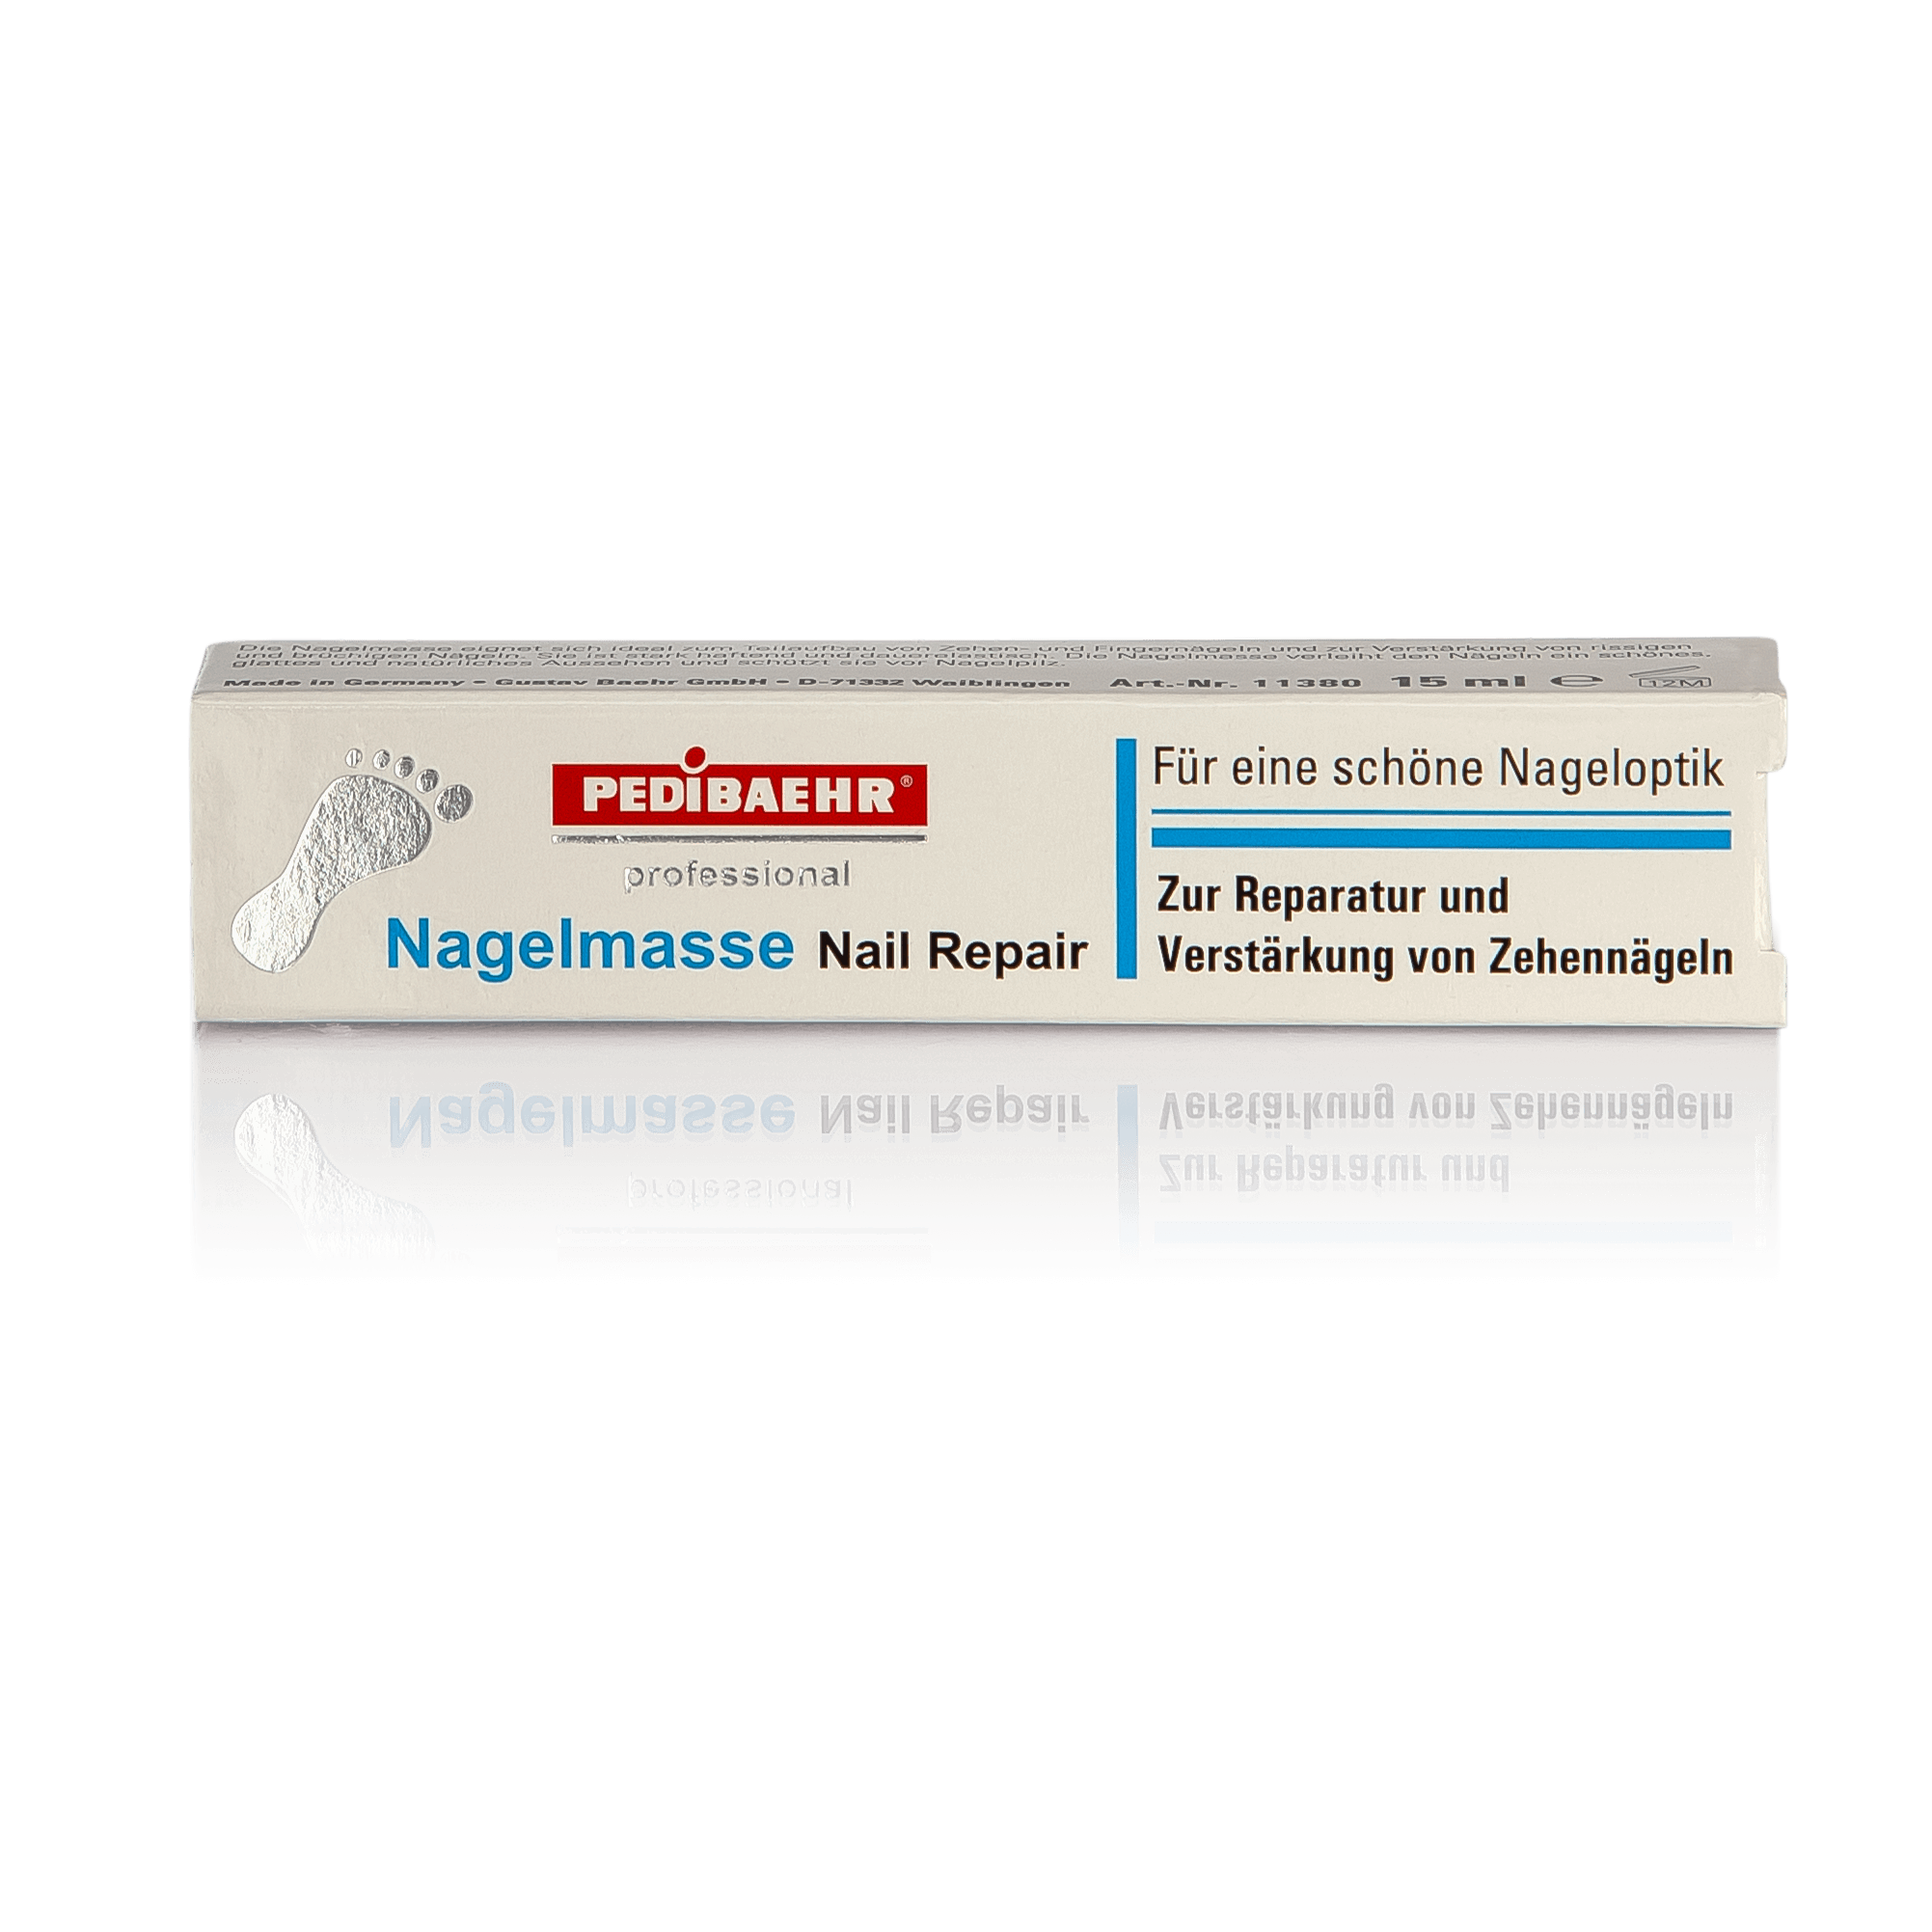 nagelmasse-nail-repair_11380_1